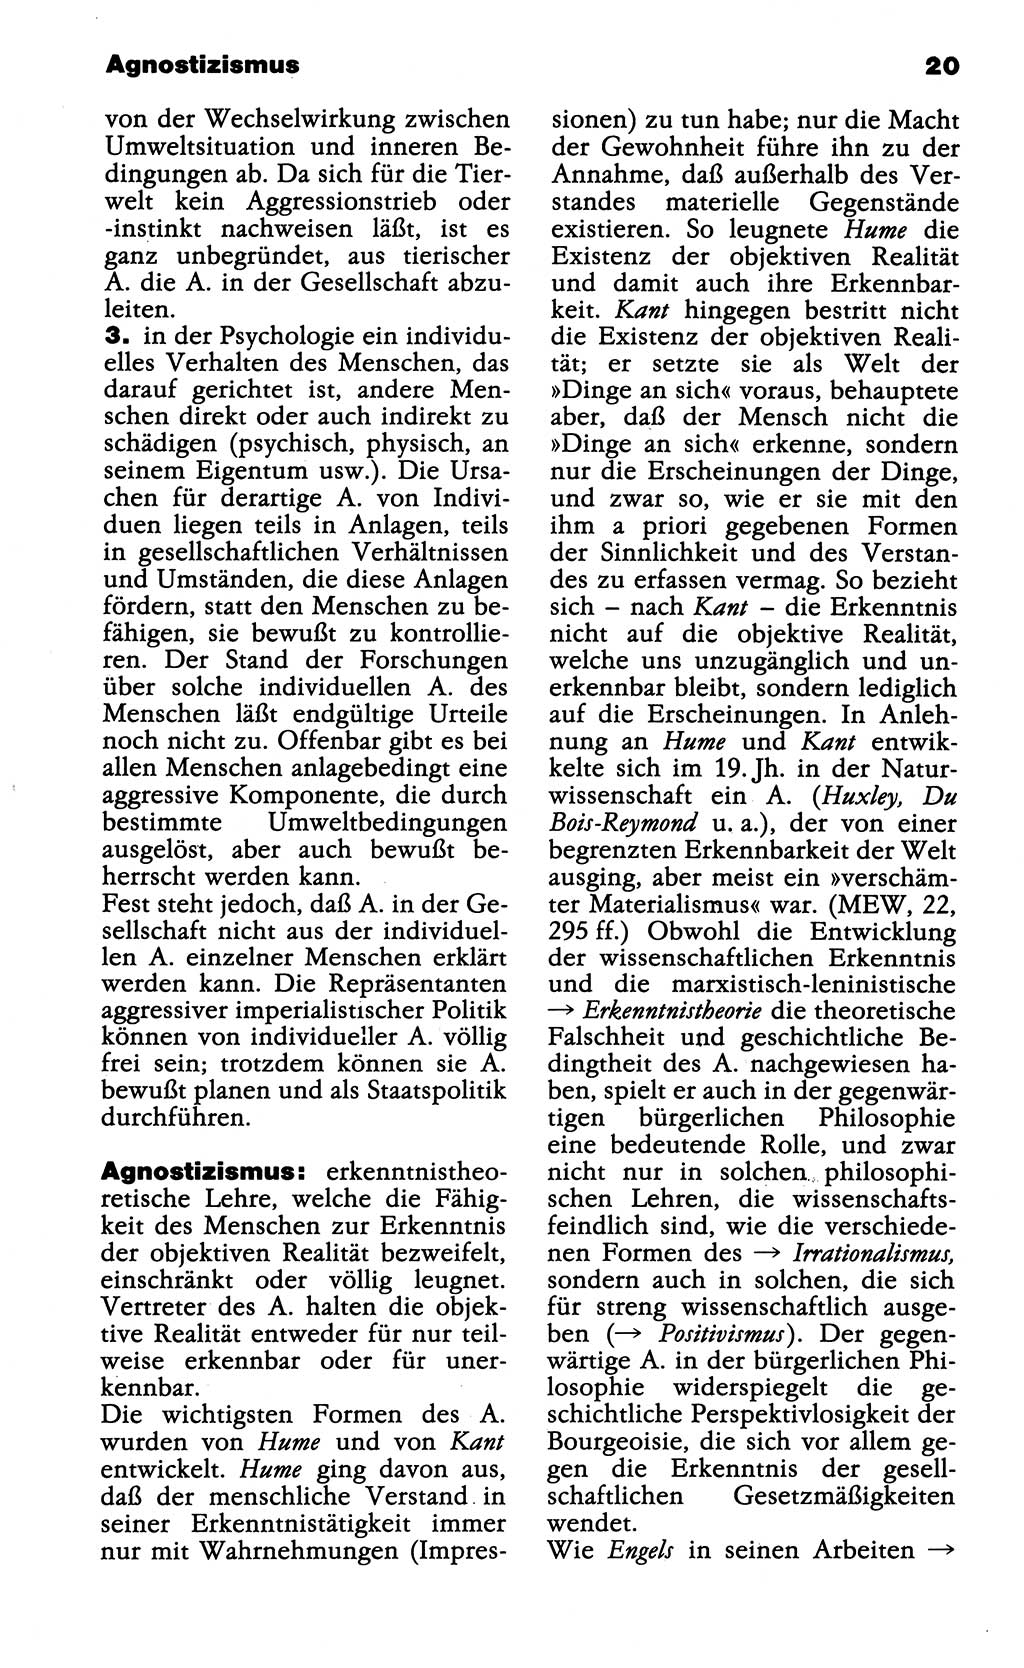 Wörterbuch der marxistisch-leninistischen Philosophie [Deutsche Demokratische Republik (DDR)] 1985, Seite 20 (Wb. ML Phil. DDR 1985, S. 20)